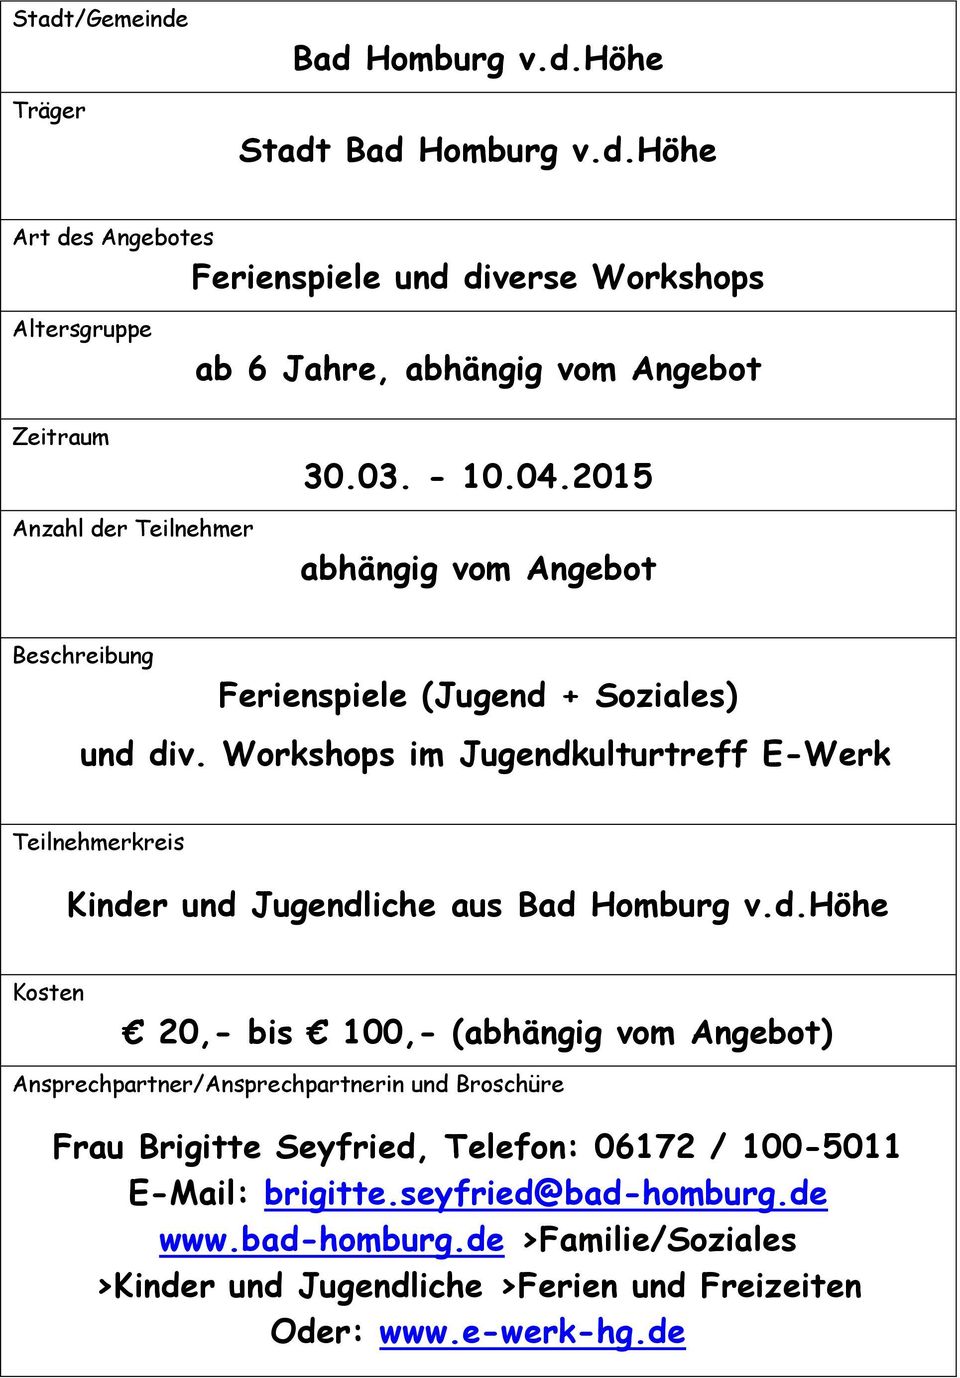 Workshops im Jugendkulturtreff E-Werk Kinder und Jugendliche aus Bad Homburg v.d.höhe 20,- bis 100,- (abhängig vom Angebot) Frau Brigitte Seyfried, Telefon: 06172 / 100-5011 E-Mail: brigitte.